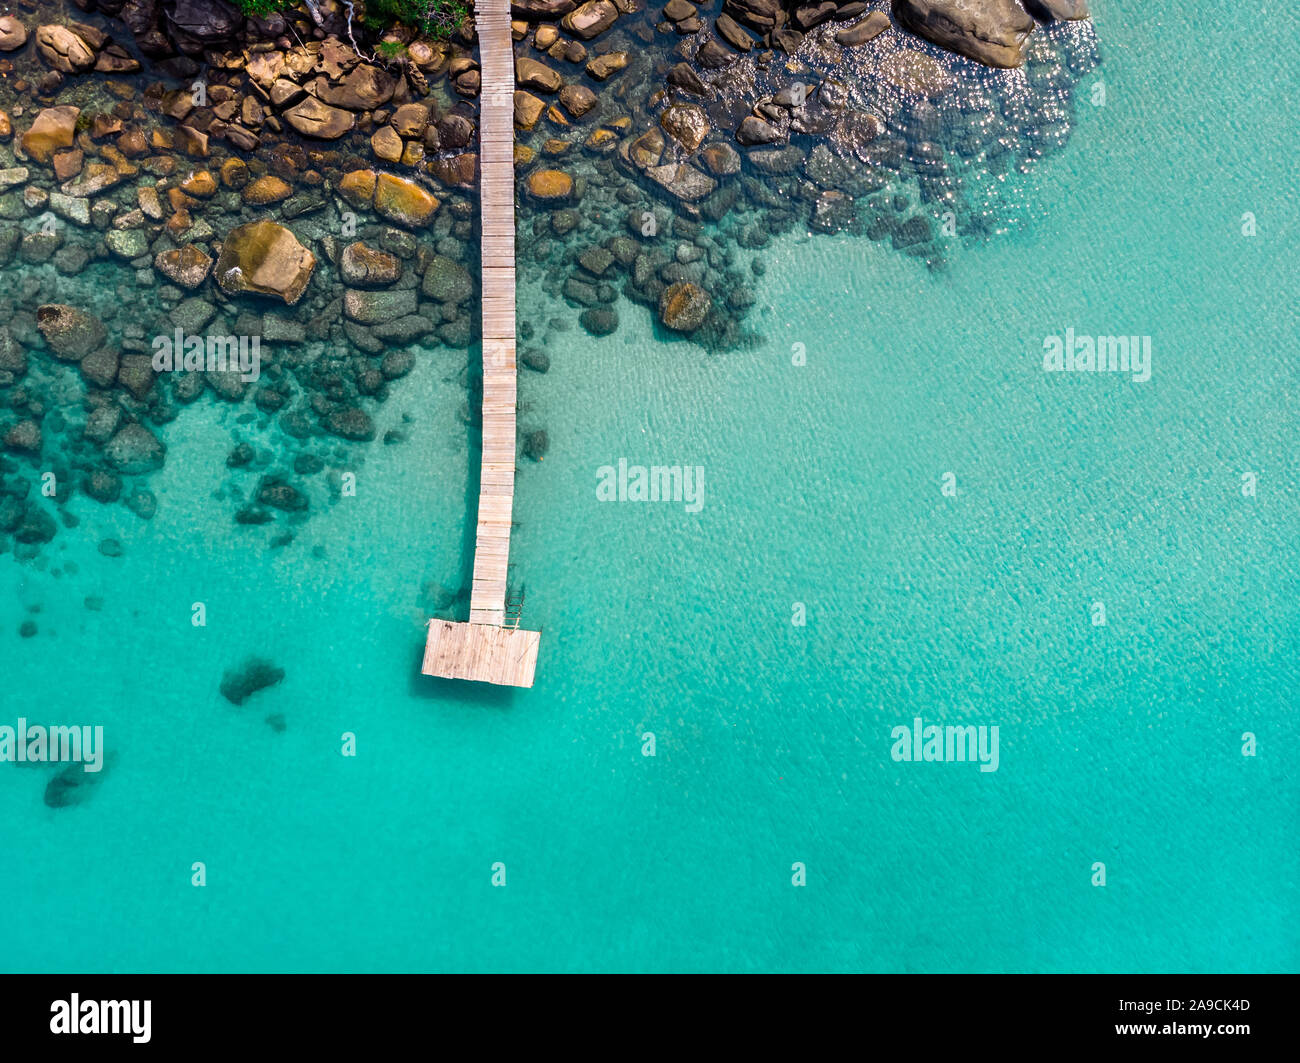 Insel Luftbild von Drone, Strand Urlaub Urlaubsziel, transparente türkise Meer Wasser mit hölzernen Pier und Felsen, wunderschönen tropischen para Stockfoto